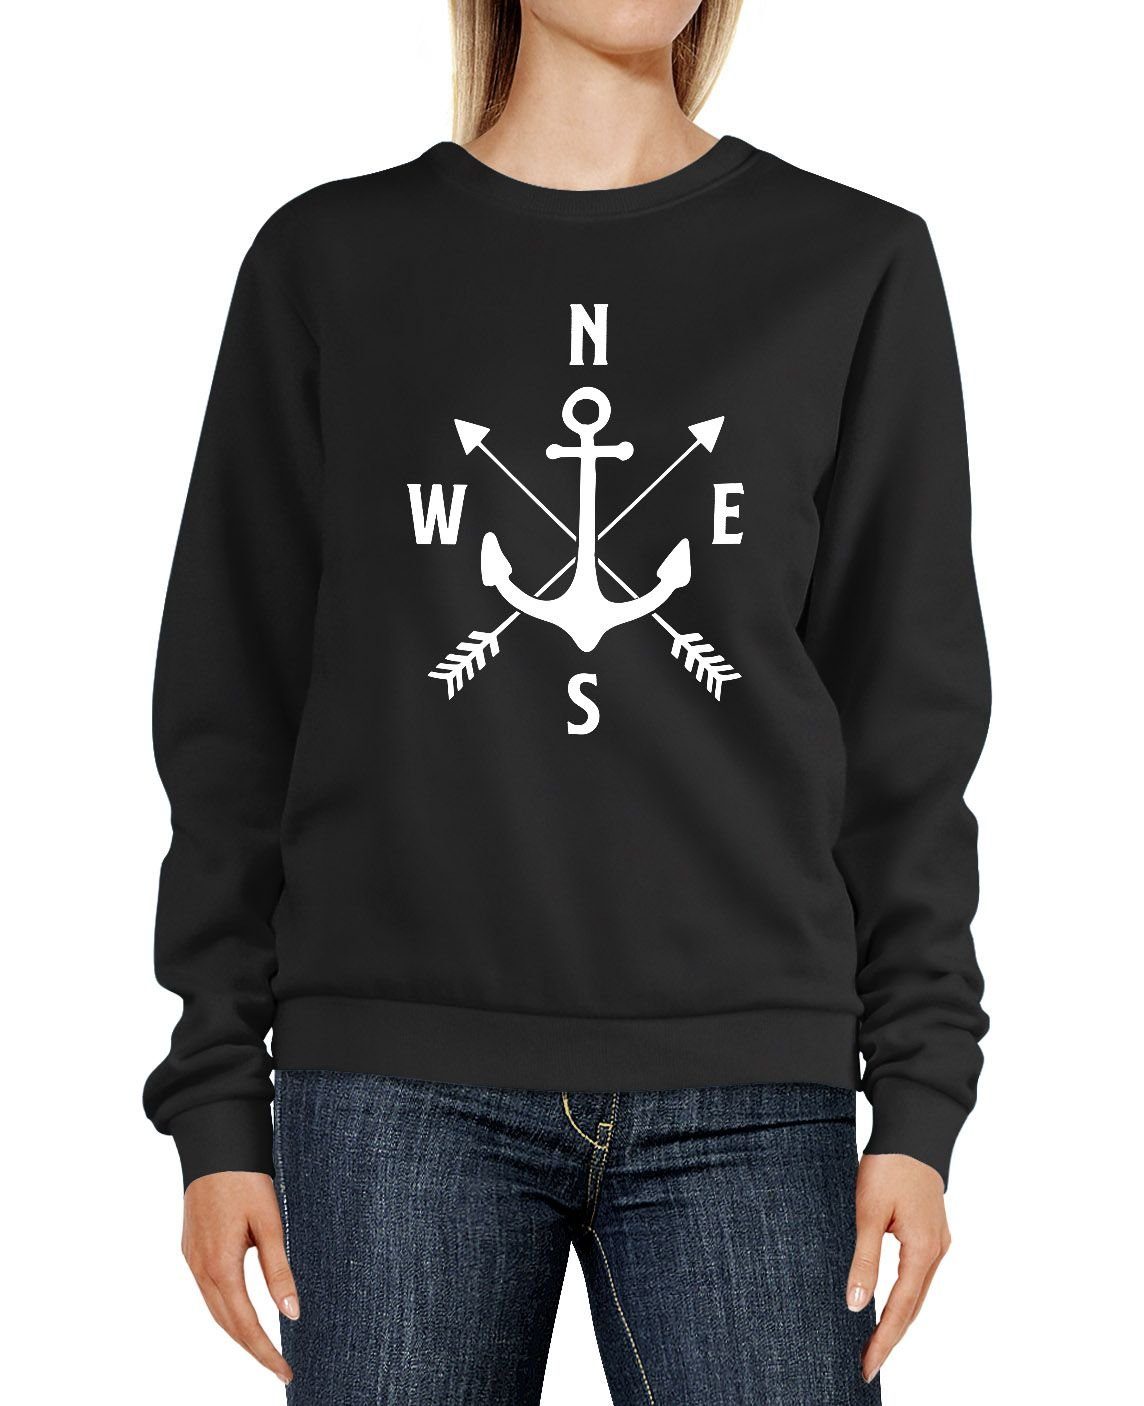 Damen Pullover MoonWorks Sweatshirt Sweatshirt Damen Aufdruck Motiv Anker Kompass Pfeile Rundhals-Pullover Pulli Sweater Moonwor